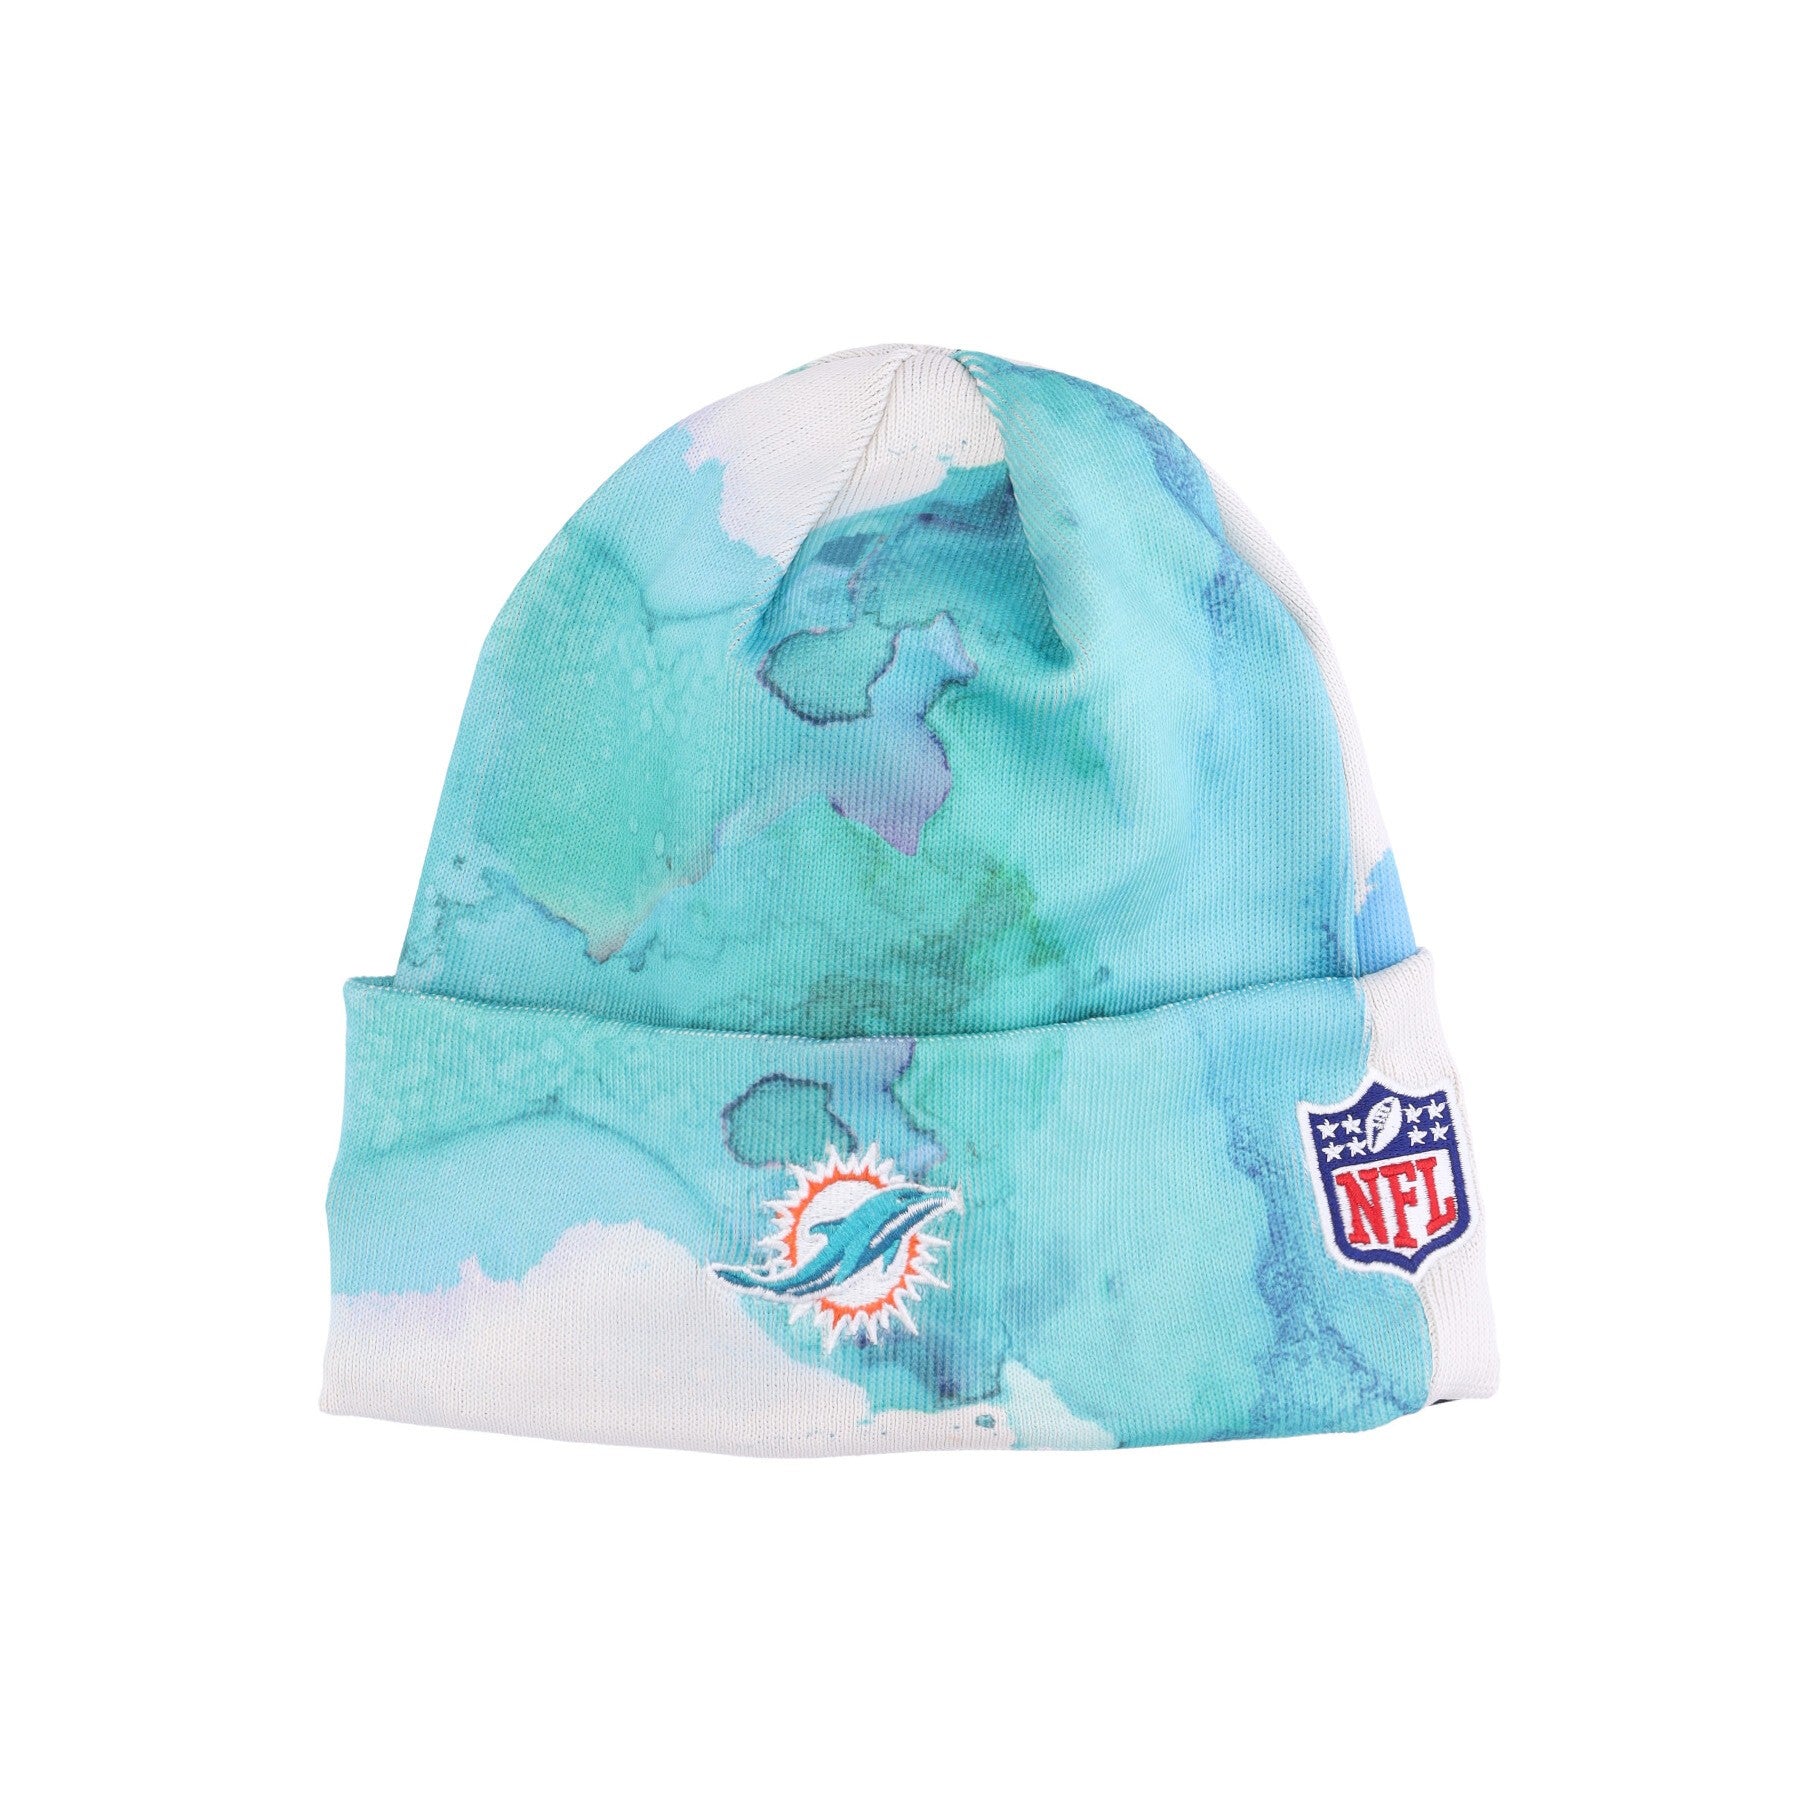 Men's NFL Sideline Ink Knit Miadol Original Team Colors Hat